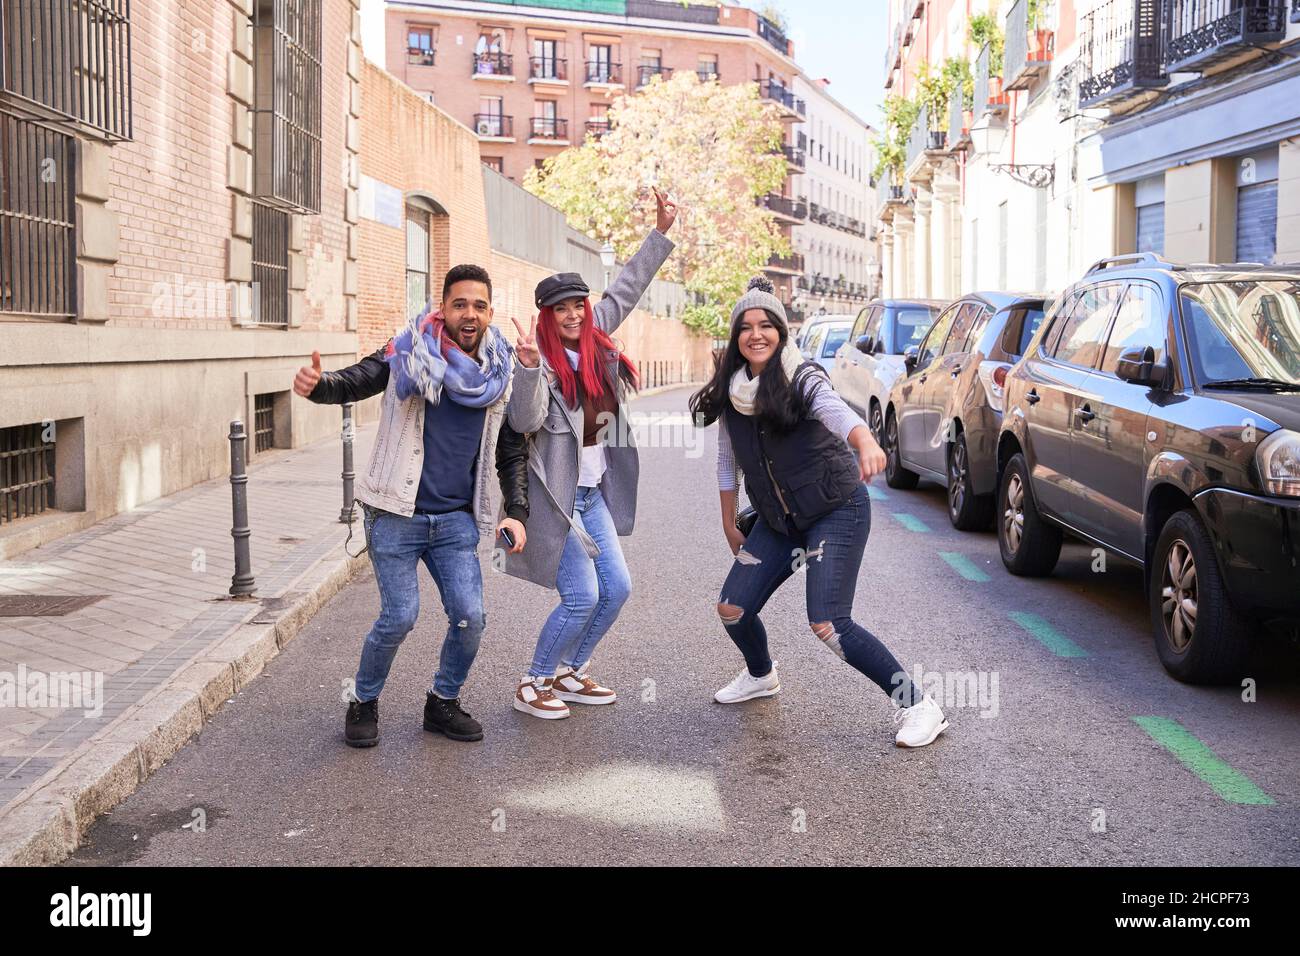 Gruppo di giovani e belli amici multietnici che si divertono, si preparano a saltare all'aria aperta in città - concetto di felicità, amicizia e lavoro di squadra. Foto Stock